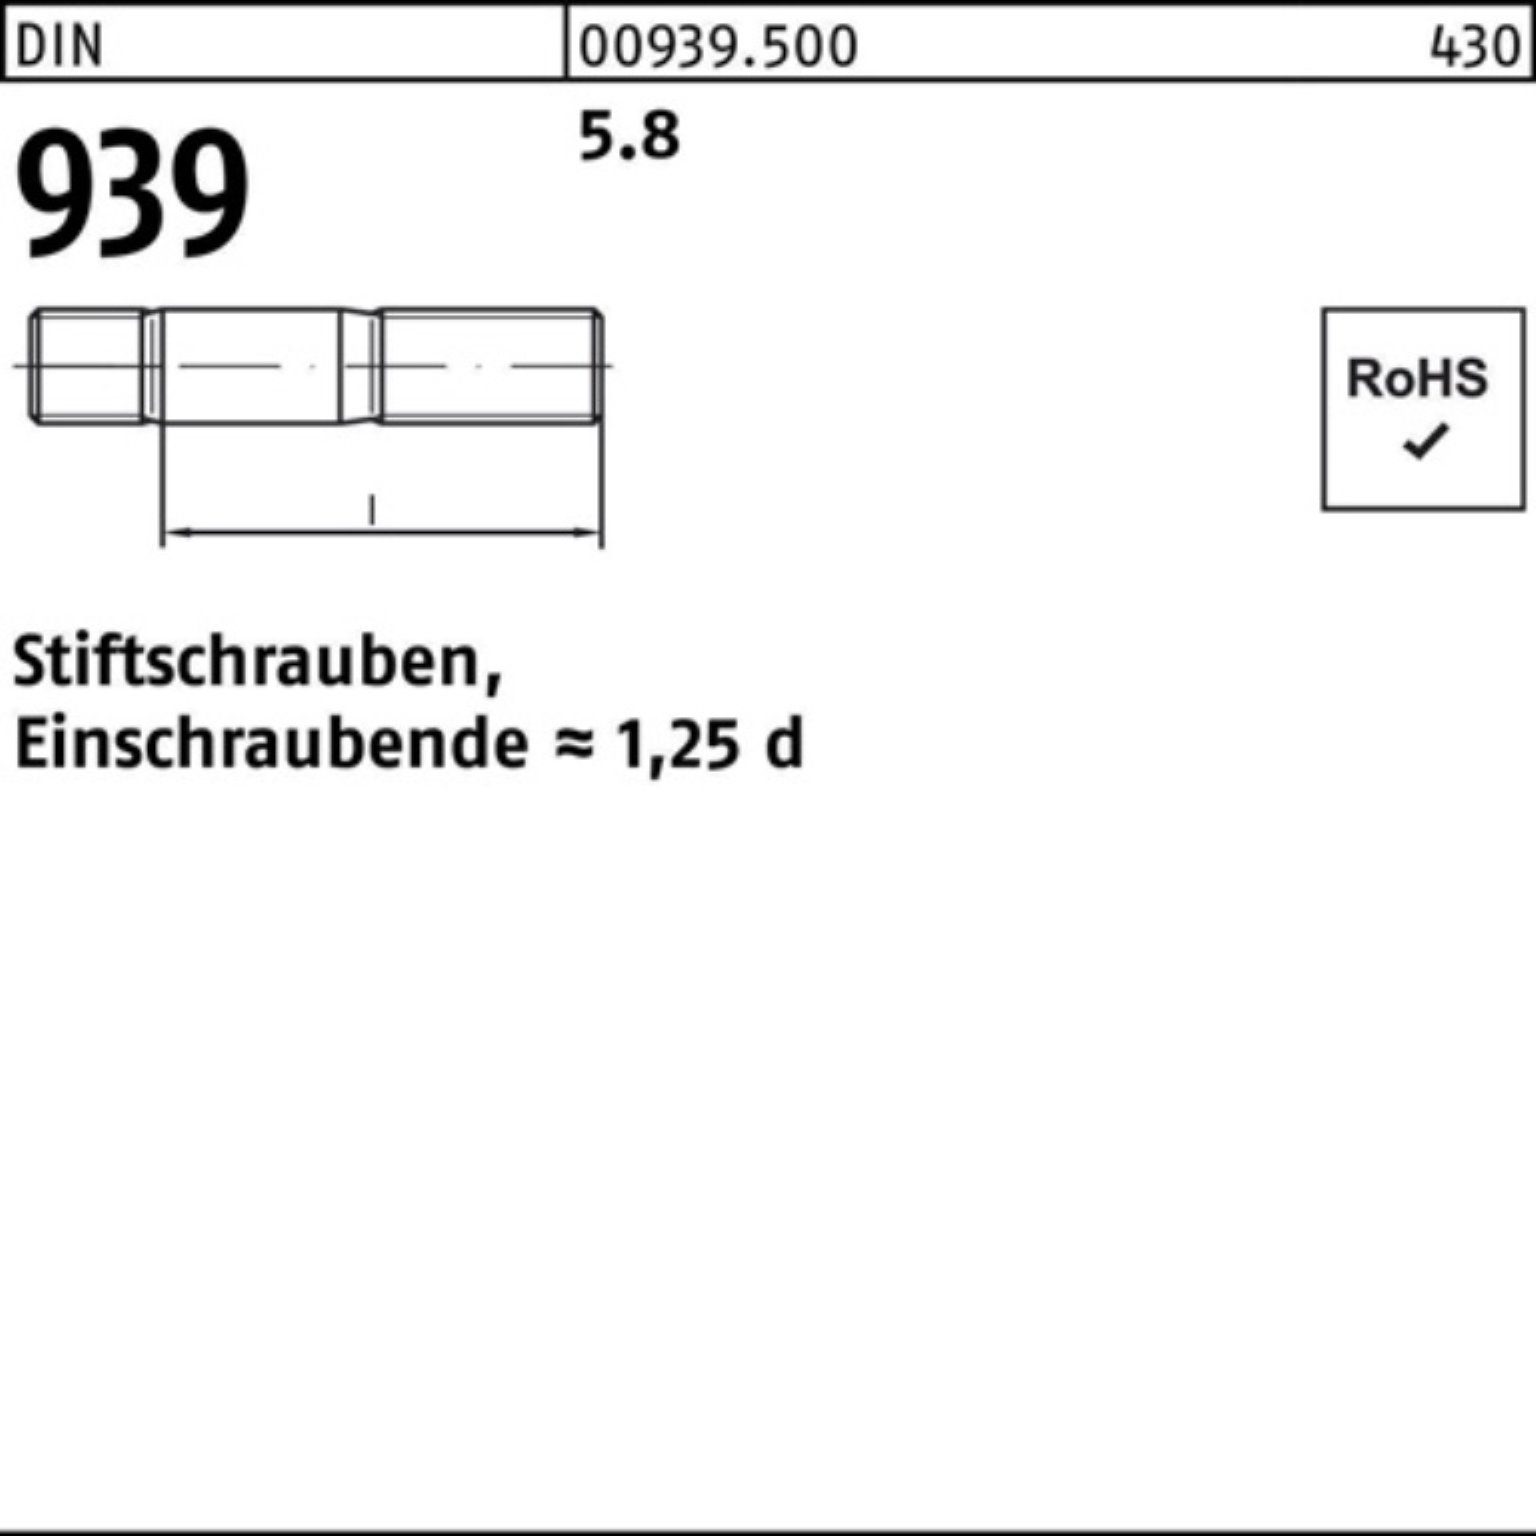 Reyher DIN Pack Stiftschraube 170 10 Stiftschraube M24x Einschraubende=1,25d 100er 939 5.8